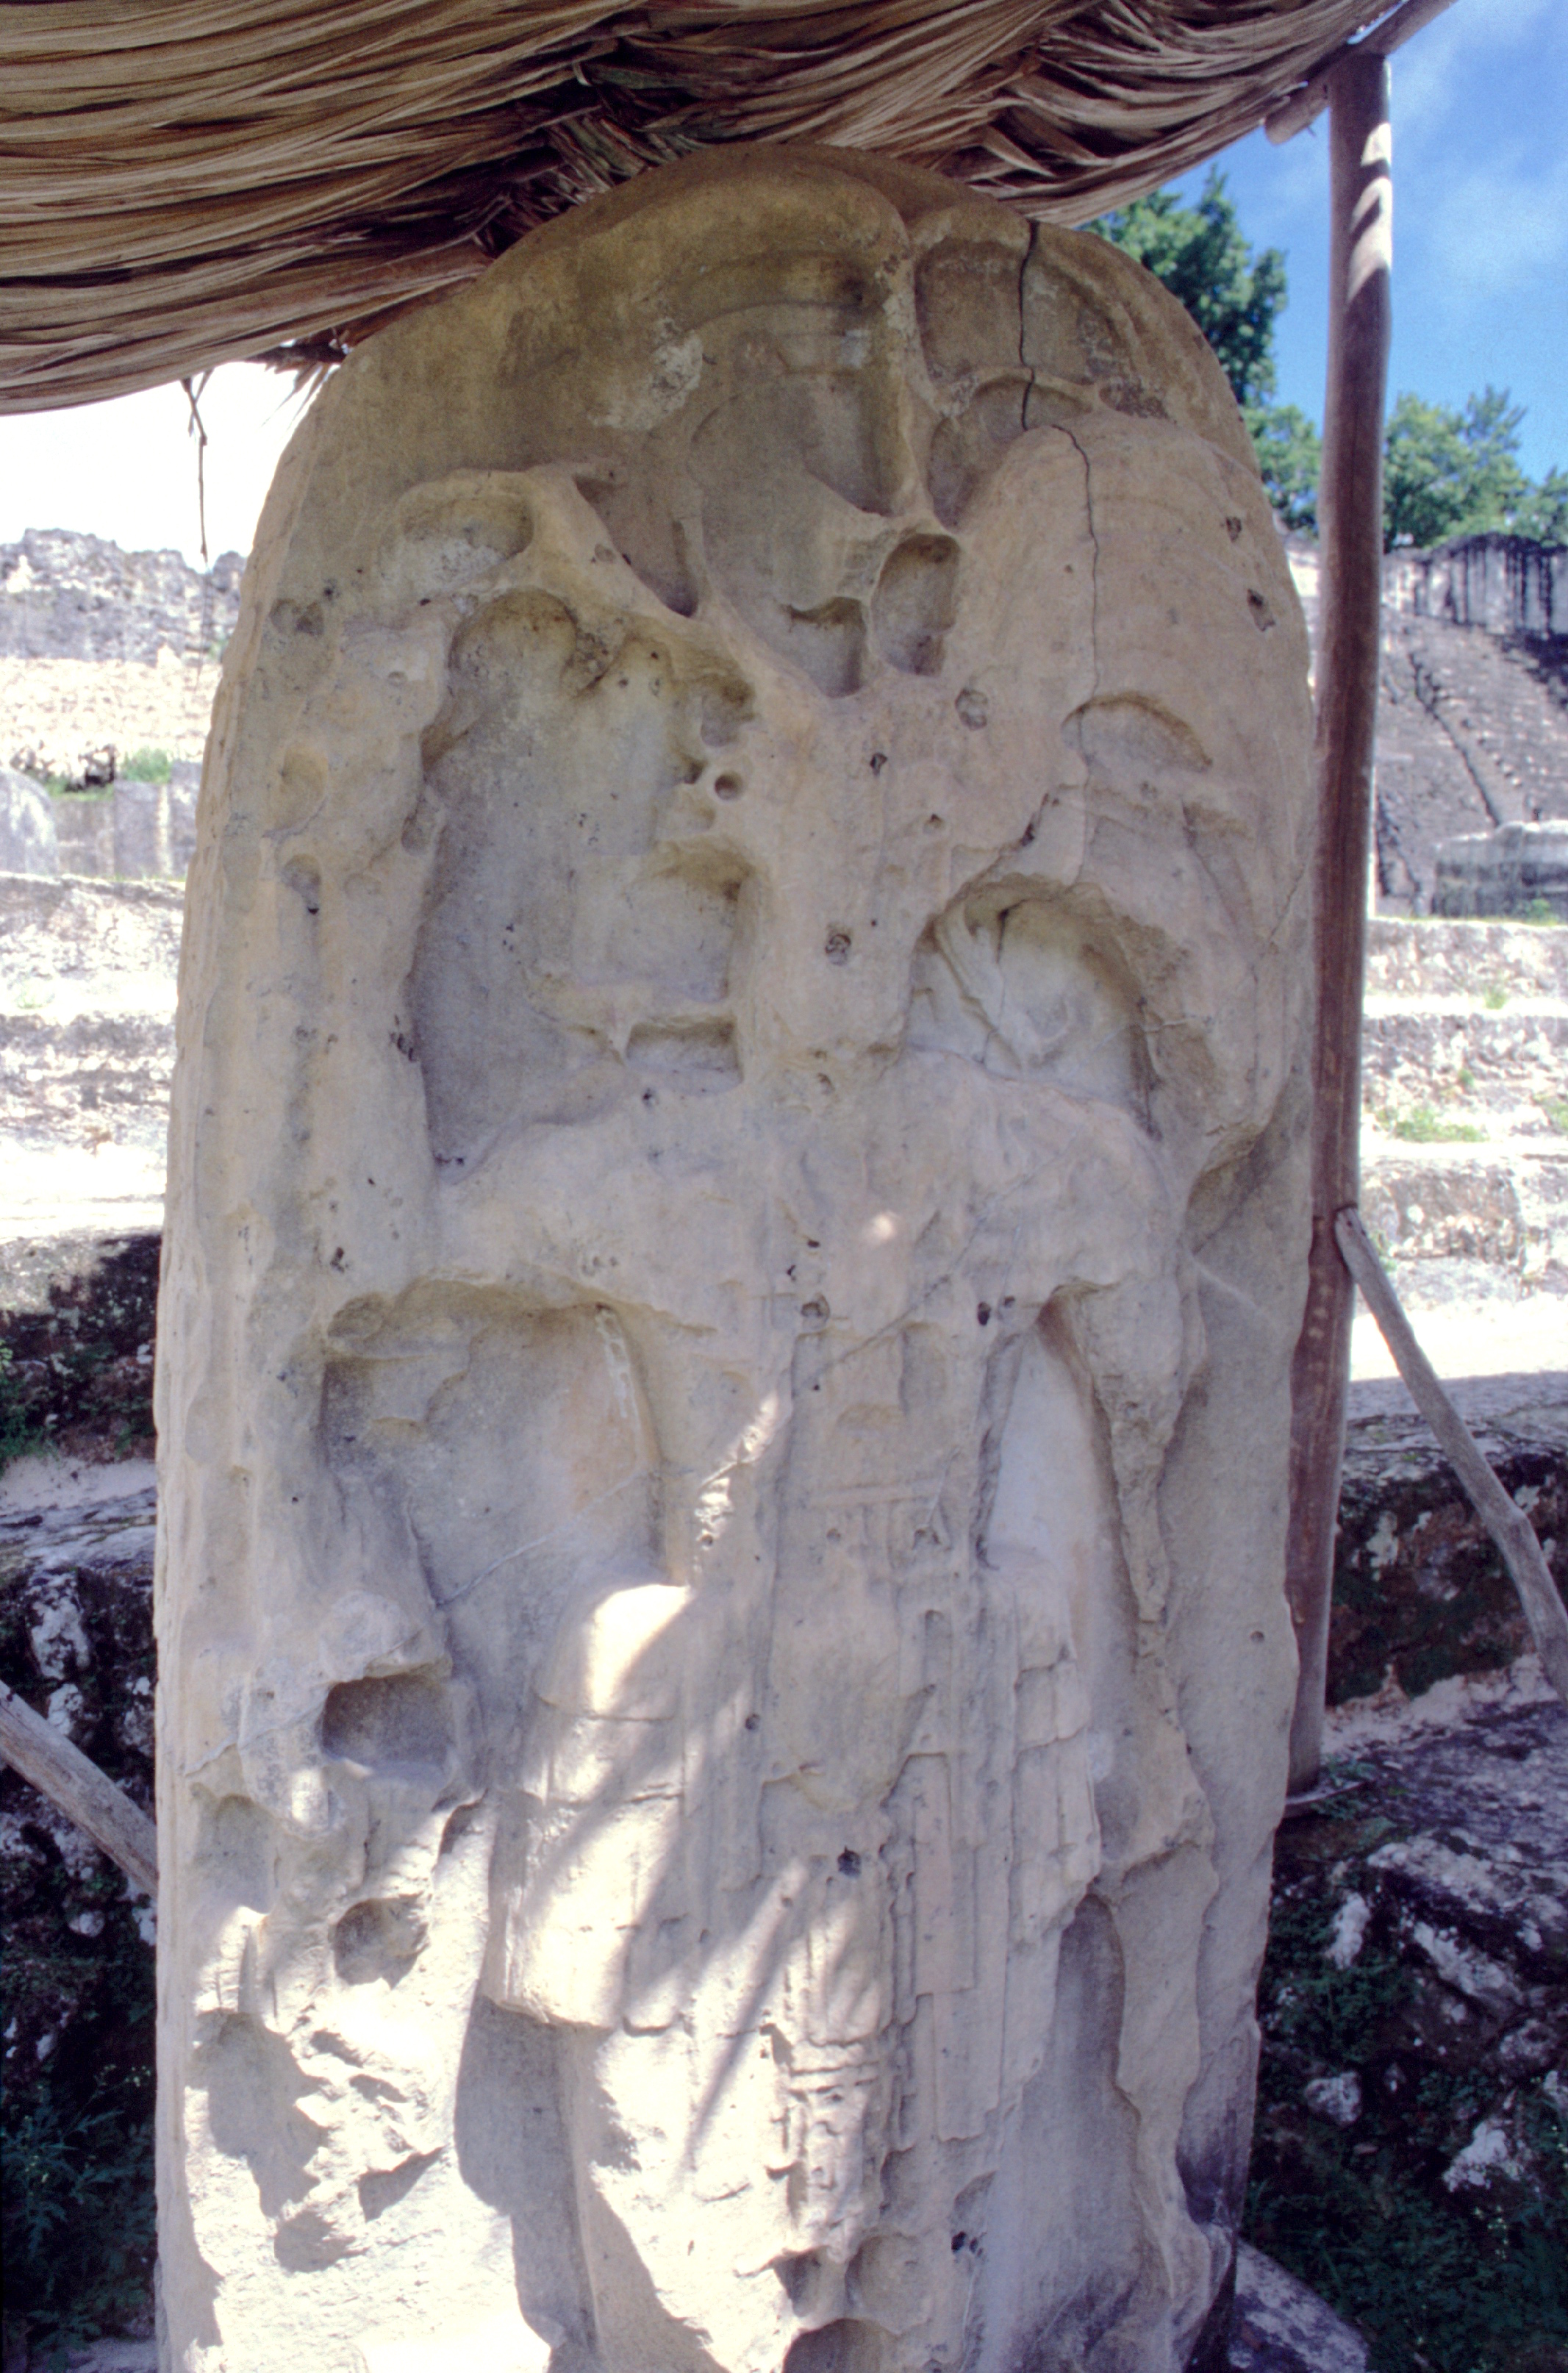 Protégée des intempéries, cette stèle montre à la fois le savoir-faire des sculpteurs mayas et en même temps la fragilité de la pierre taillée sur place, un grès crayeux. La stèle est appelée Kalompe Balam « Ruler Jaguar » et a été  dédicacée en l’an 527.